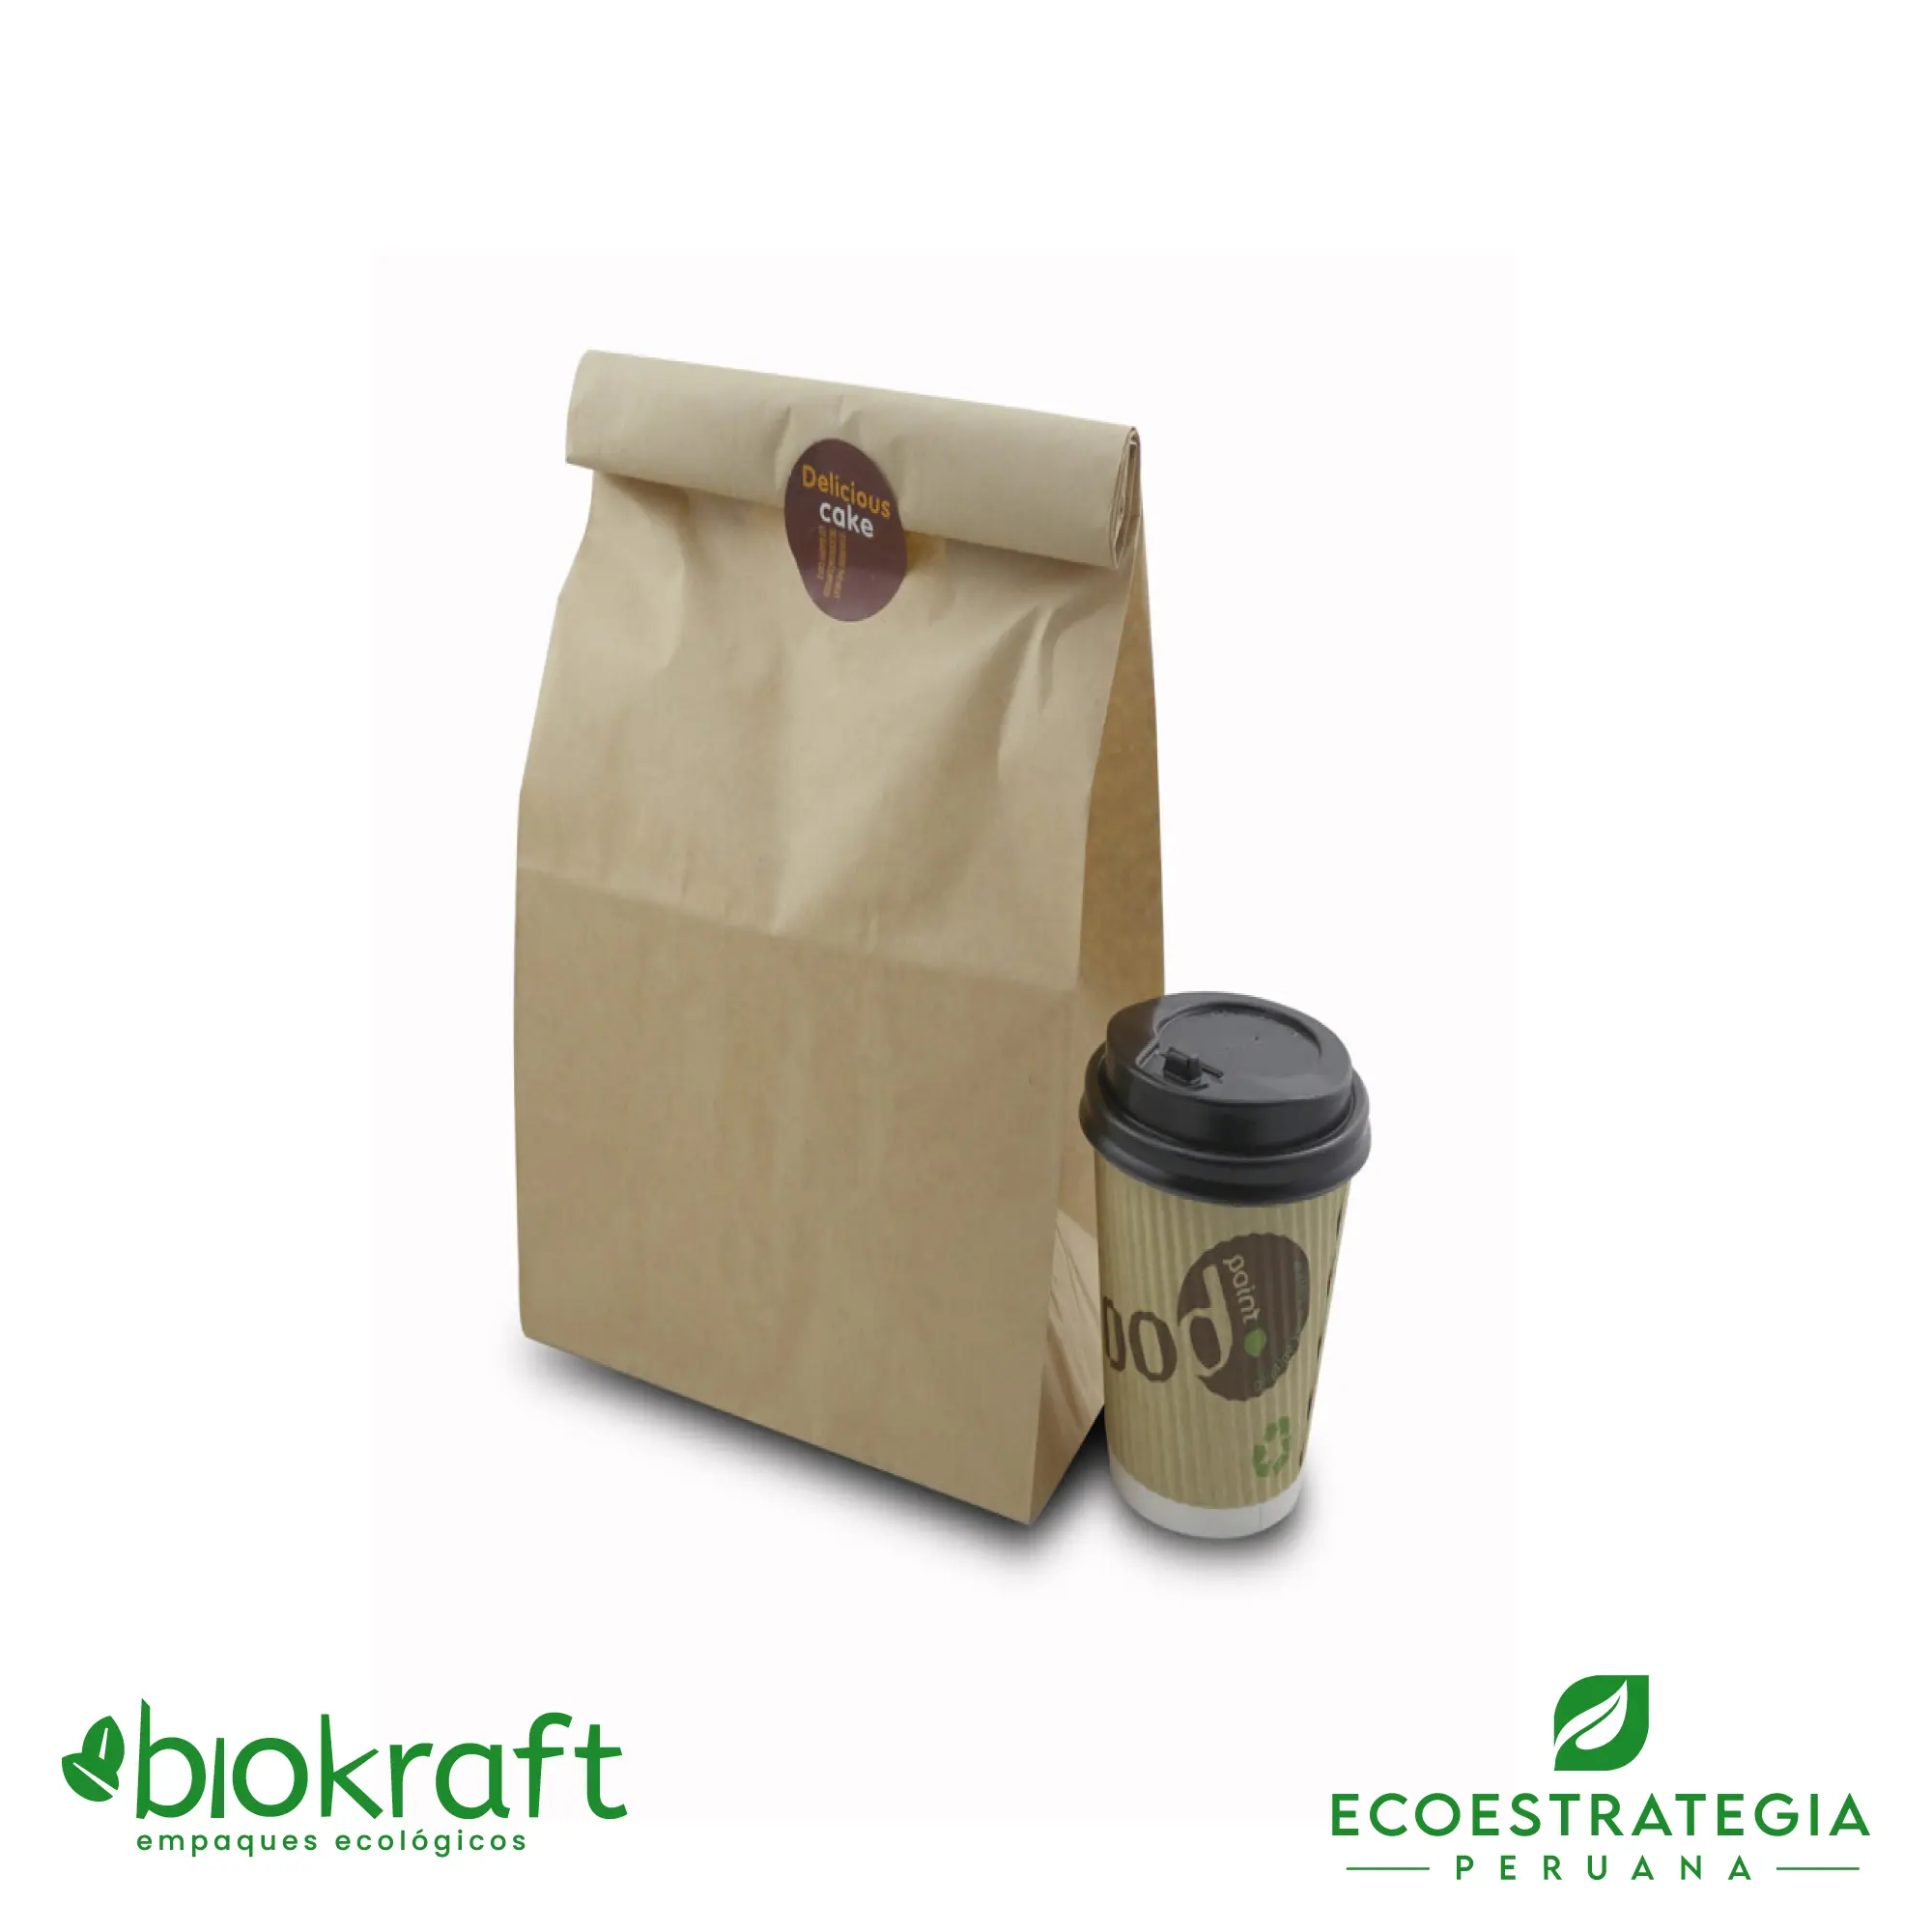 Esta bolsa de papel Kraft tiene un grosor de 60 gr y un peso de 17gr. Bolsas biodegradables y ecológicas reutilizables y personalizadas. Ideal para delivery